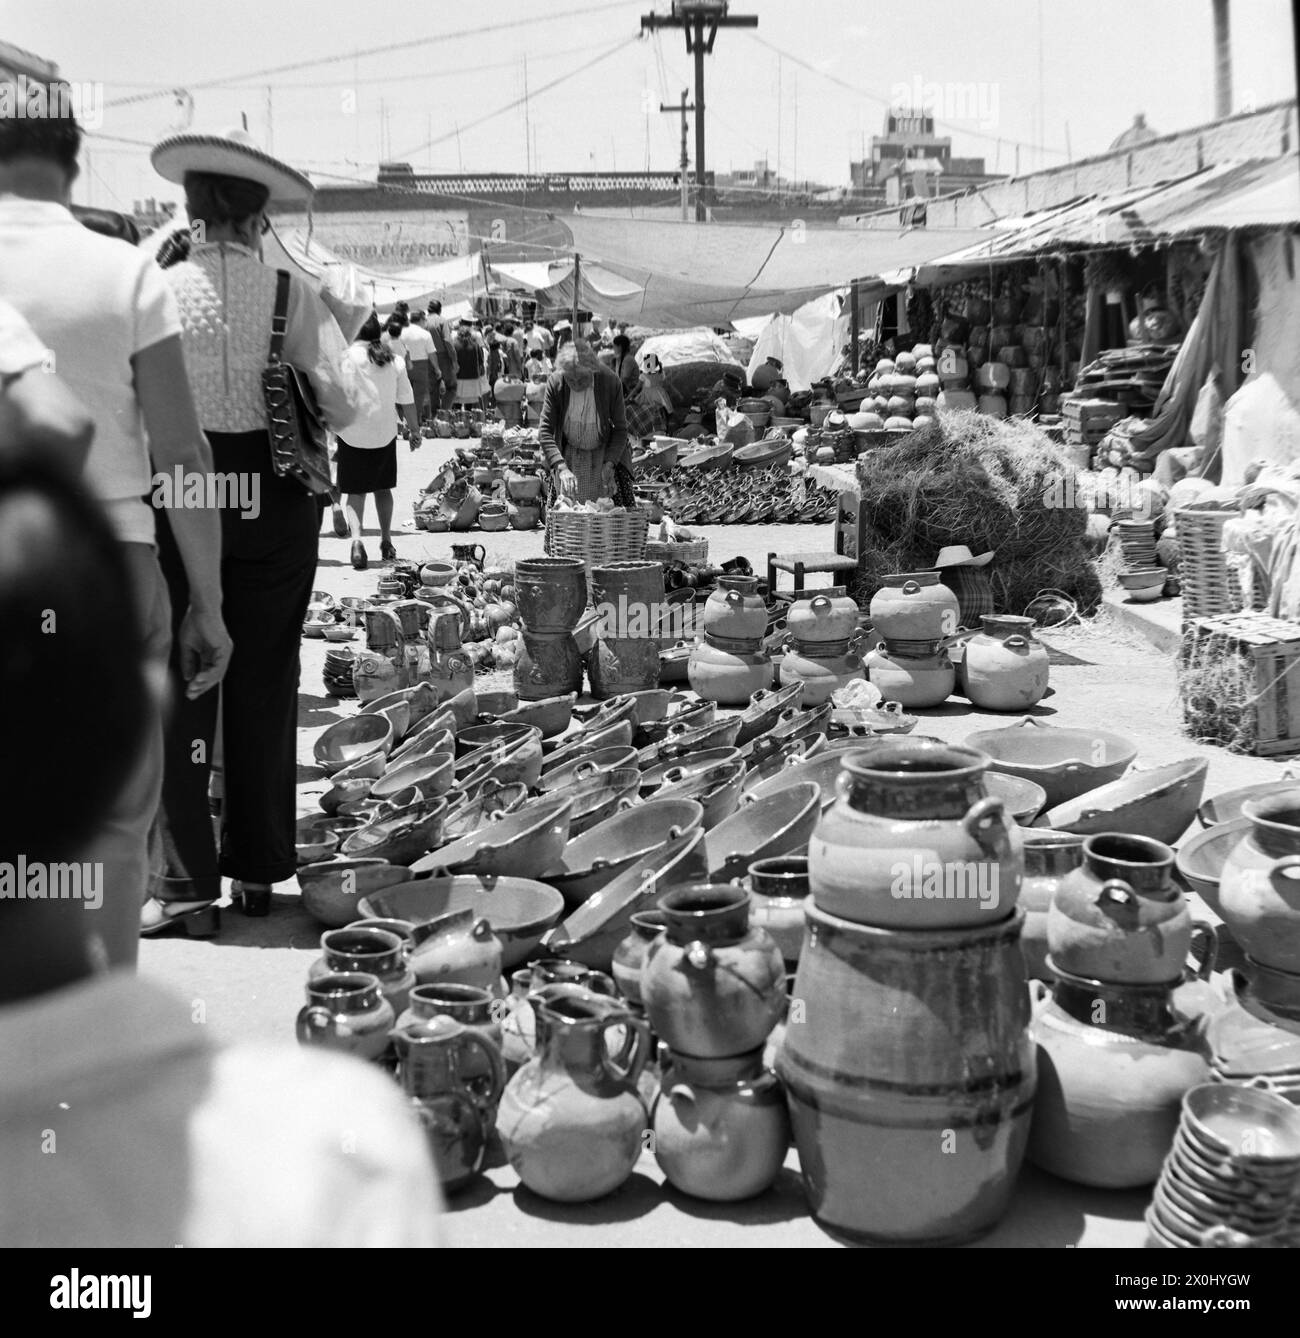 Blick auf den Markt in Toluca in Mexiko. Mehrere Händler haben ihre Keramik an Decken und Planen auf dem Boden verbreitet. Mehrere Leute schauen sich die angebotenen Waren an. Darunter sind Tonkrüge und Schüsseln. [Automatisierte Übersetzung] Stockfoto